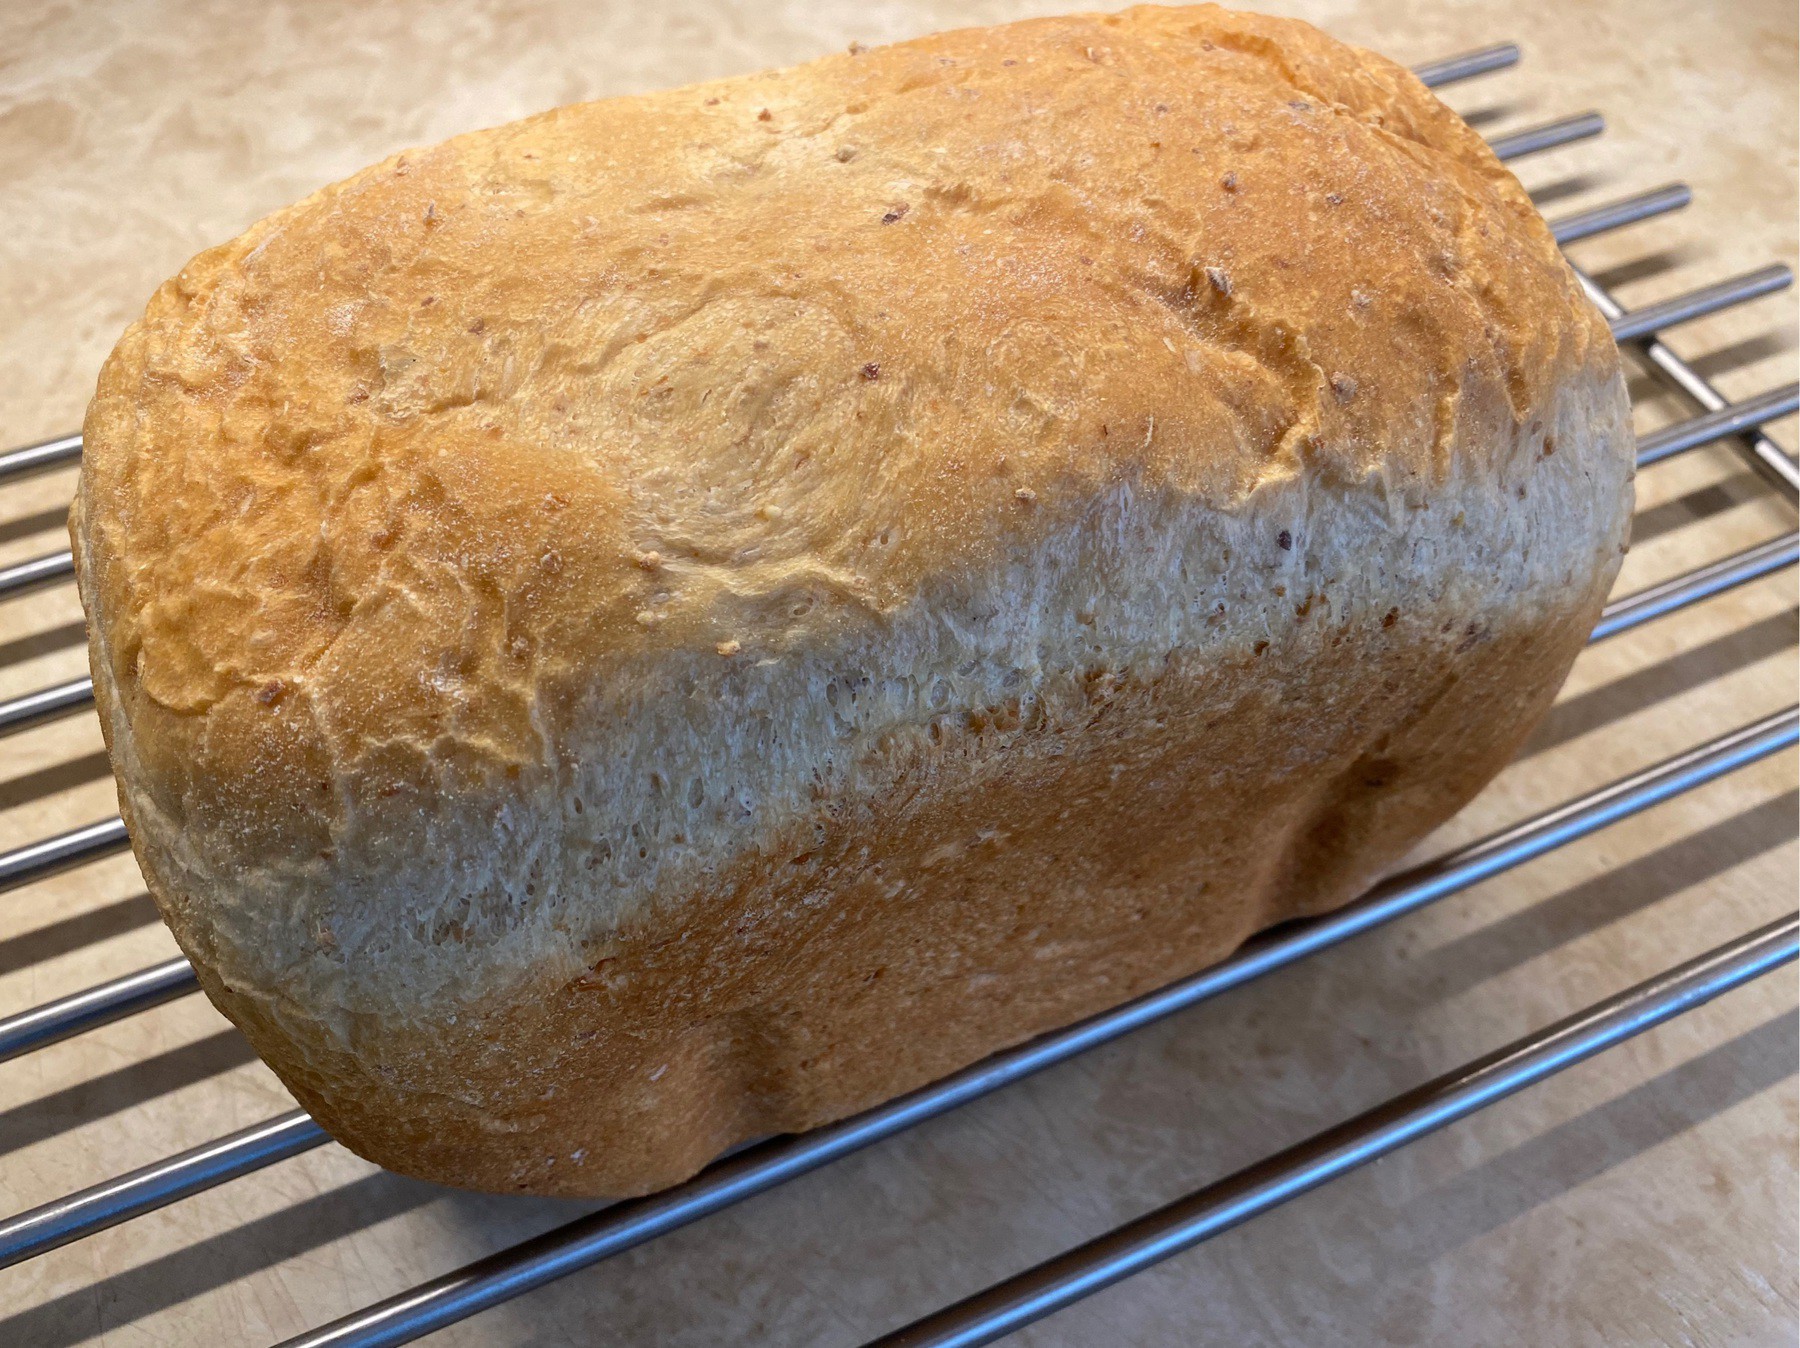 Loaf of bread cooling on rack.